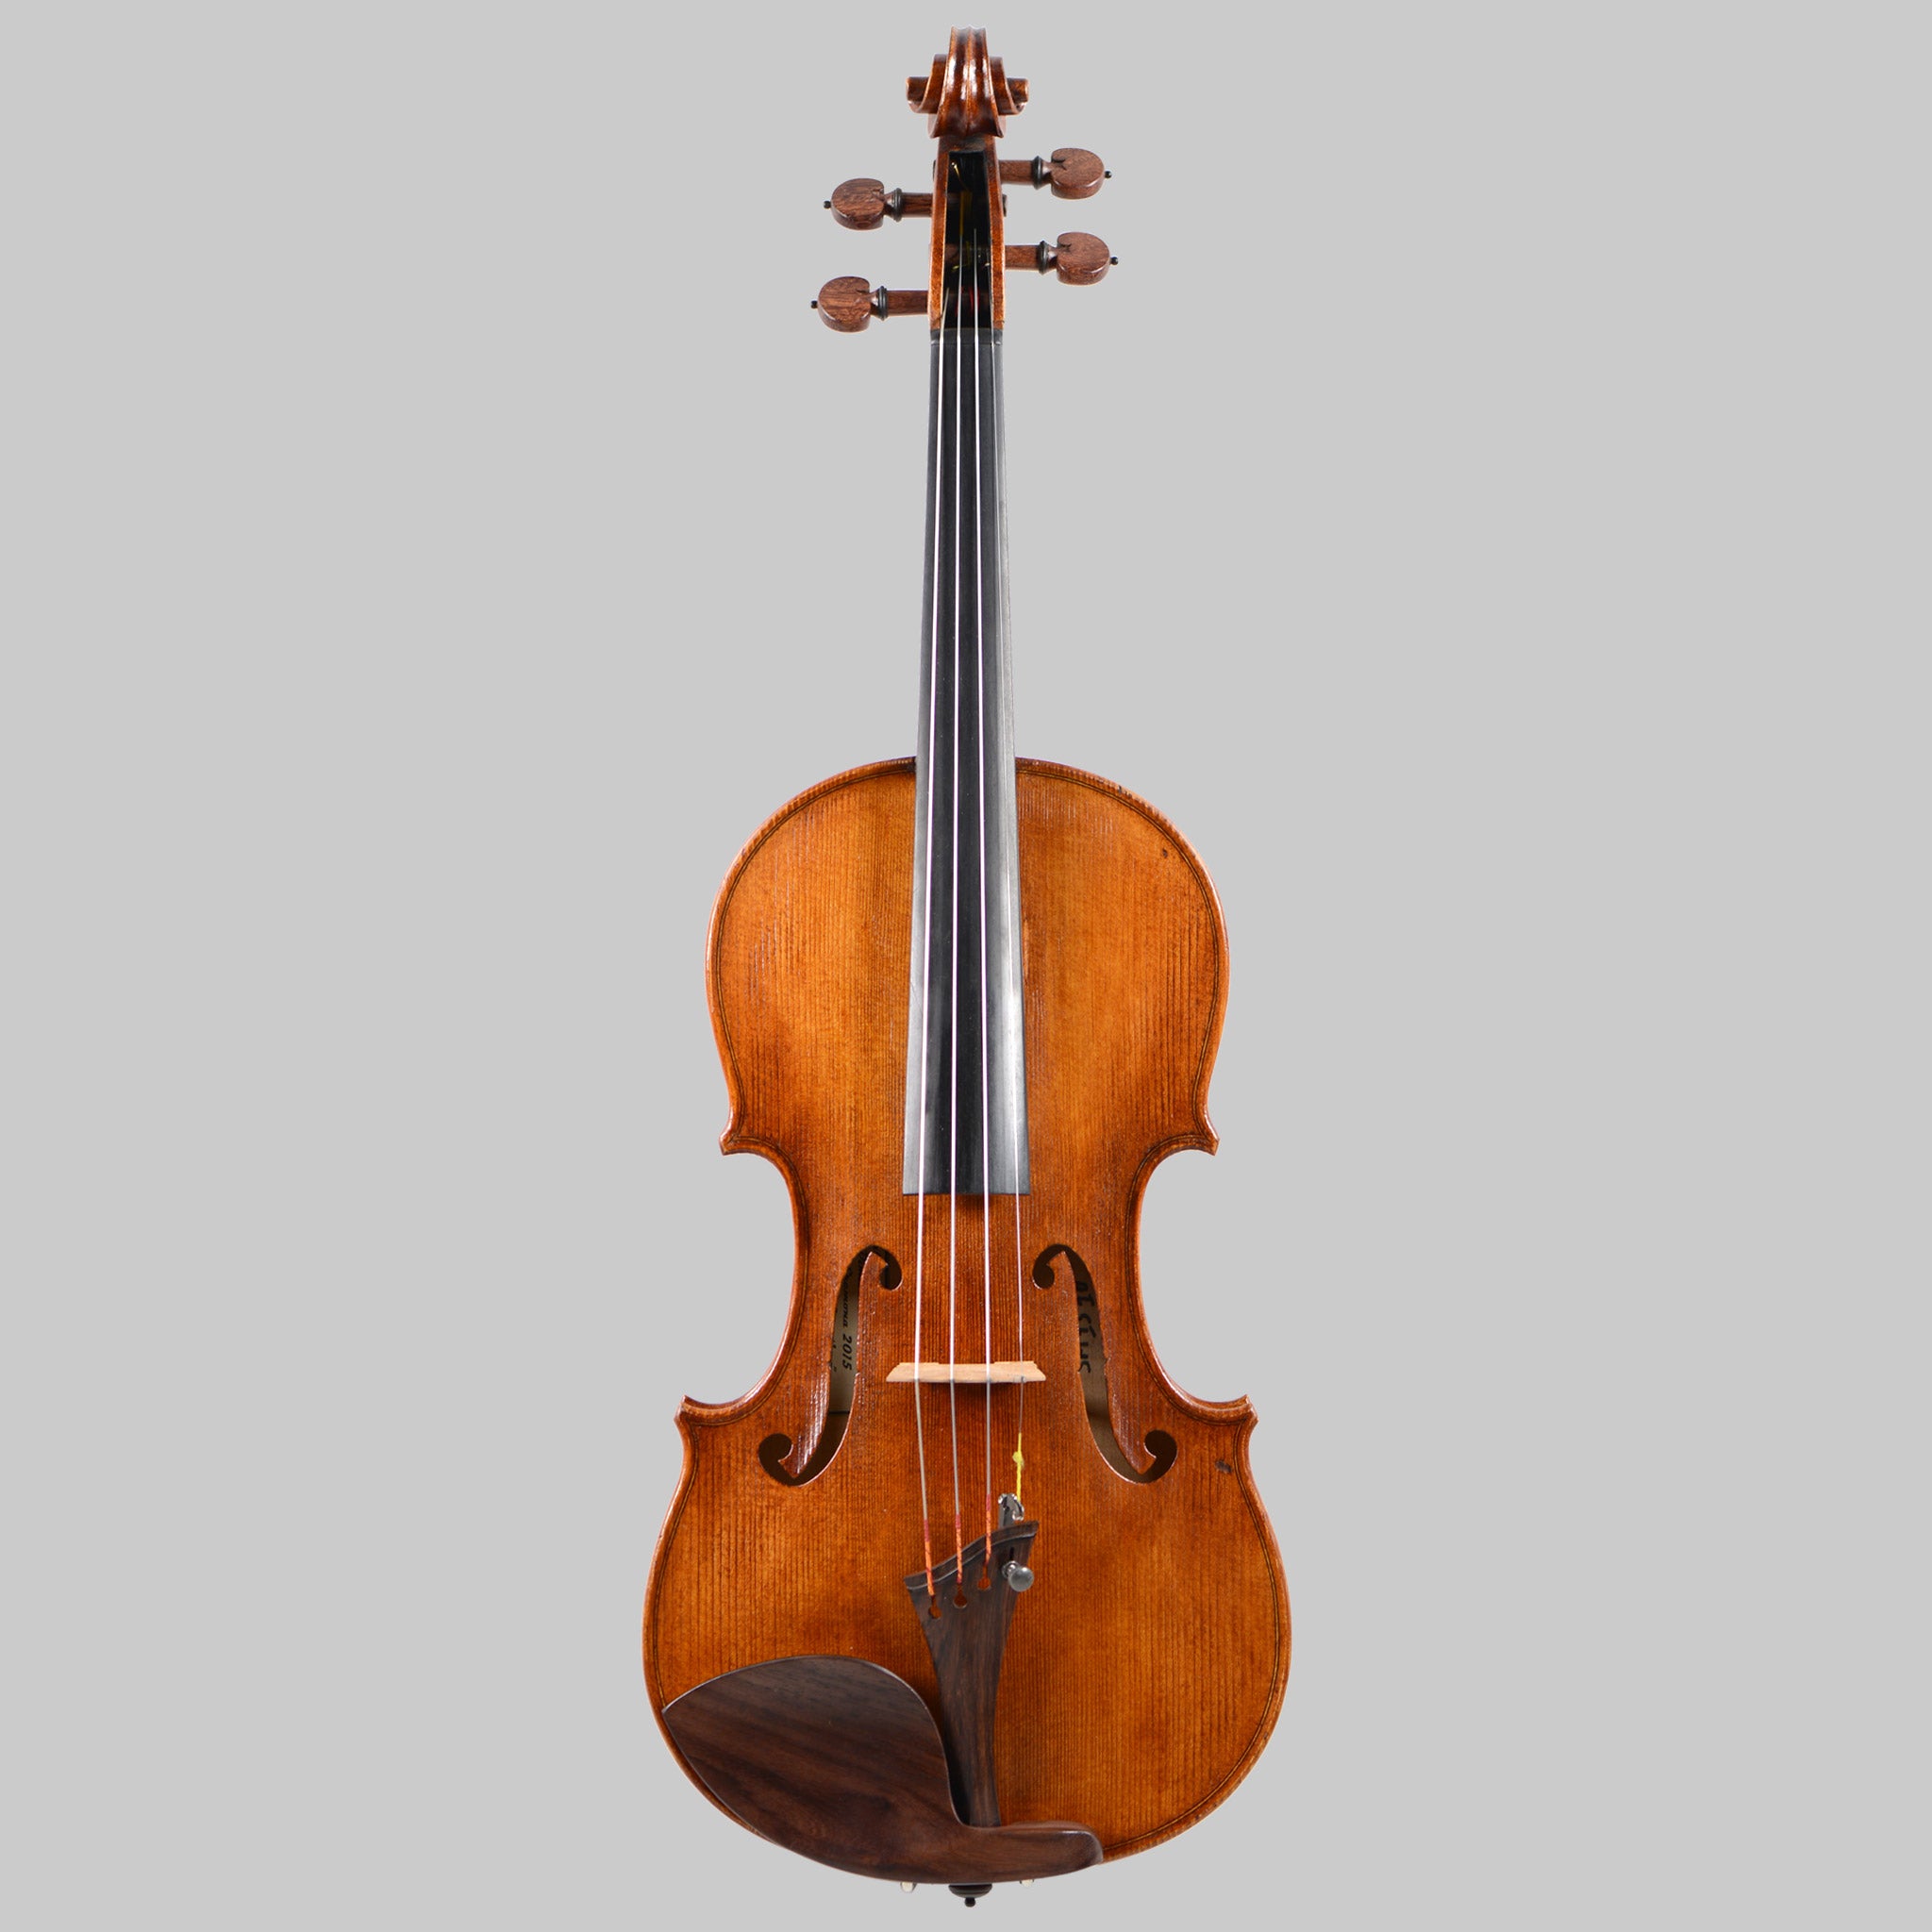 Dimitri Atanassov "San Martino" 2015 Violin